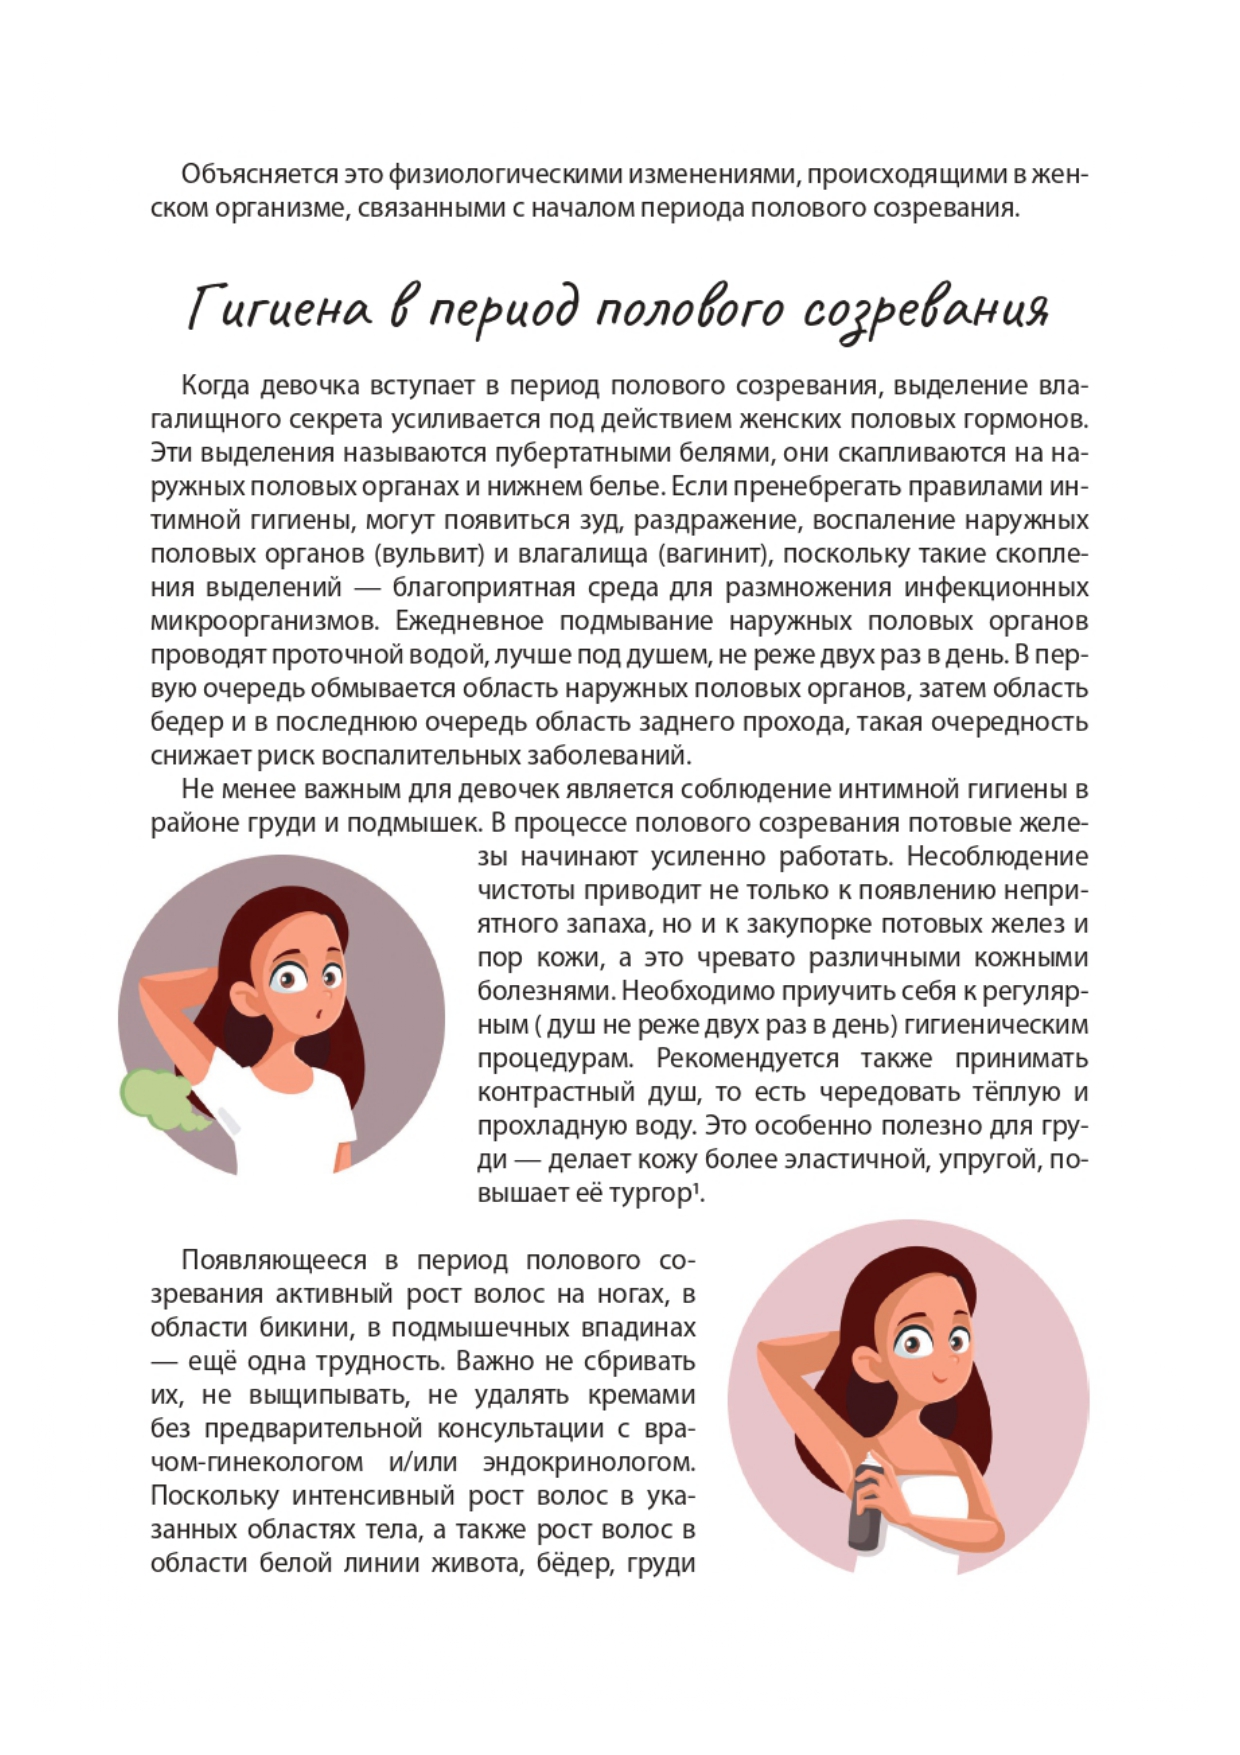 reproduktivnoe-zdorove-devochkam page-0005